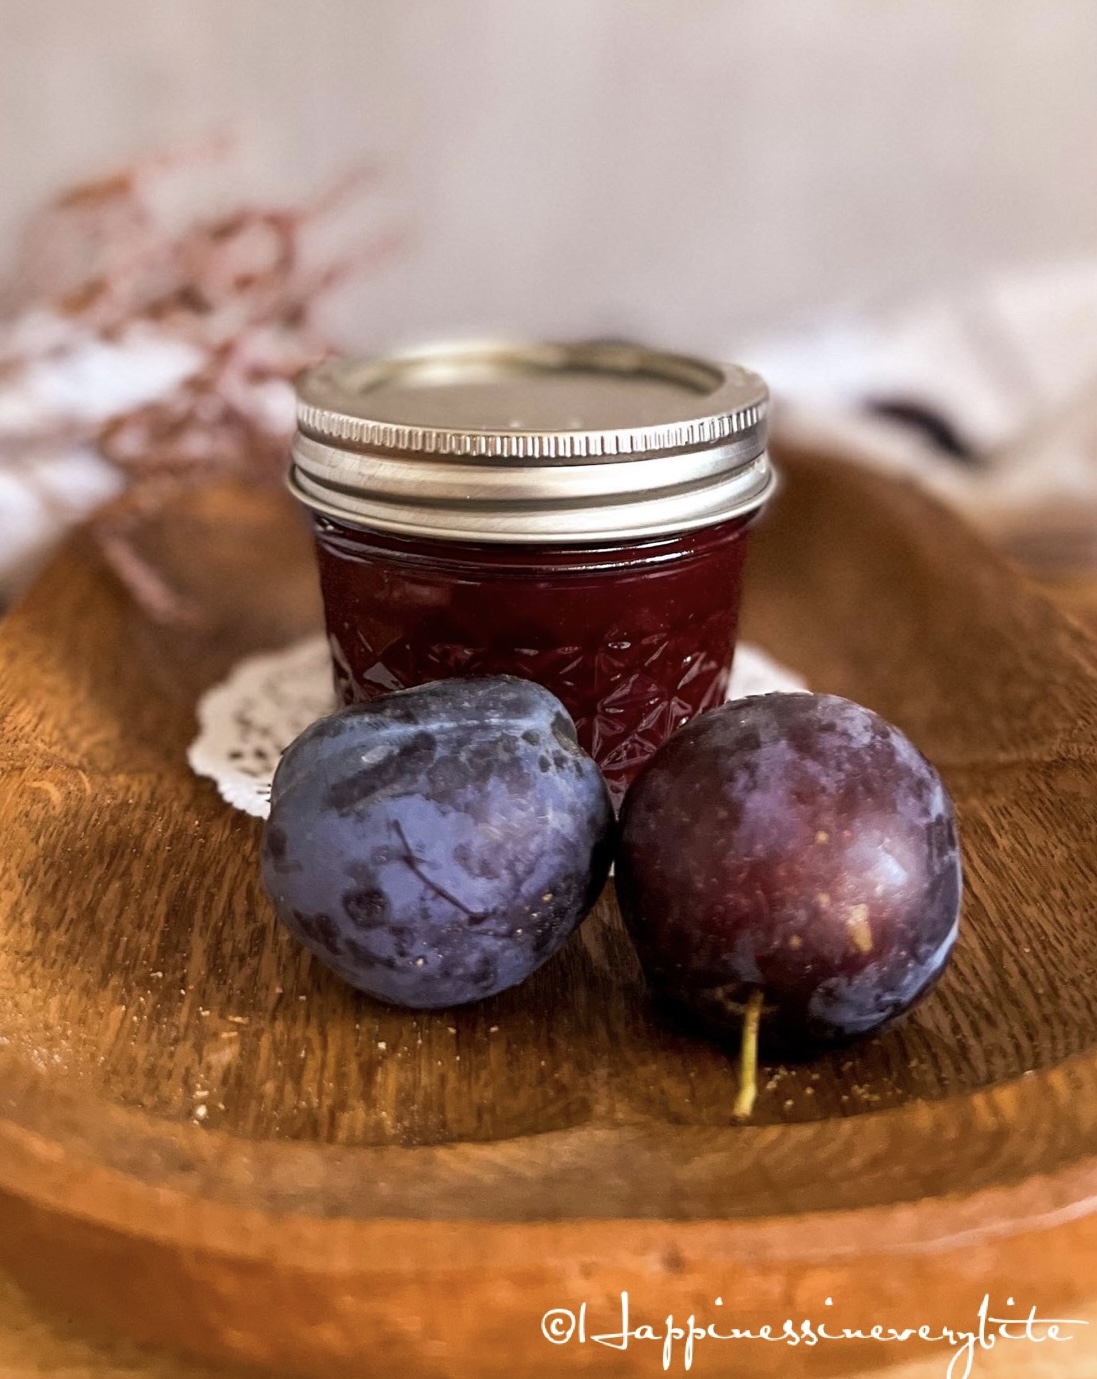 Delicious plum jam